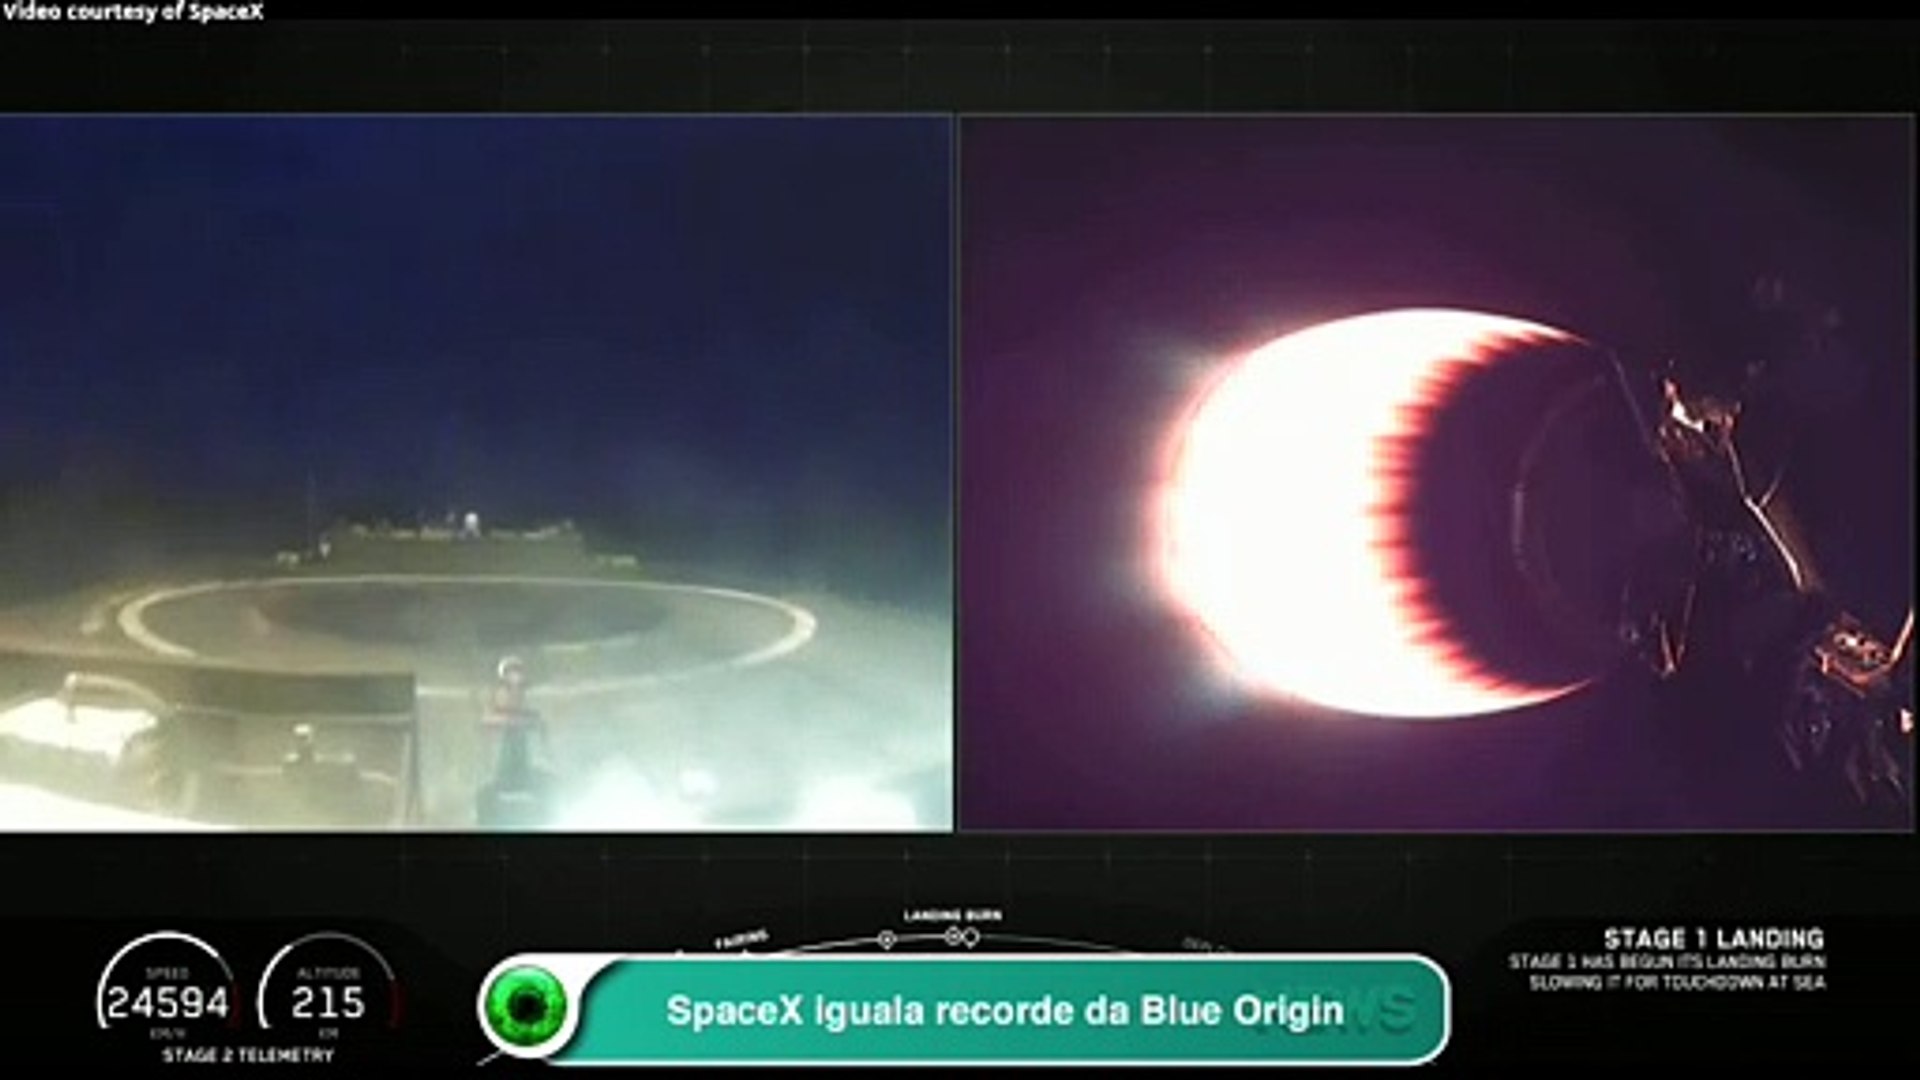 SpaceX iguala recorde da Blue Origin